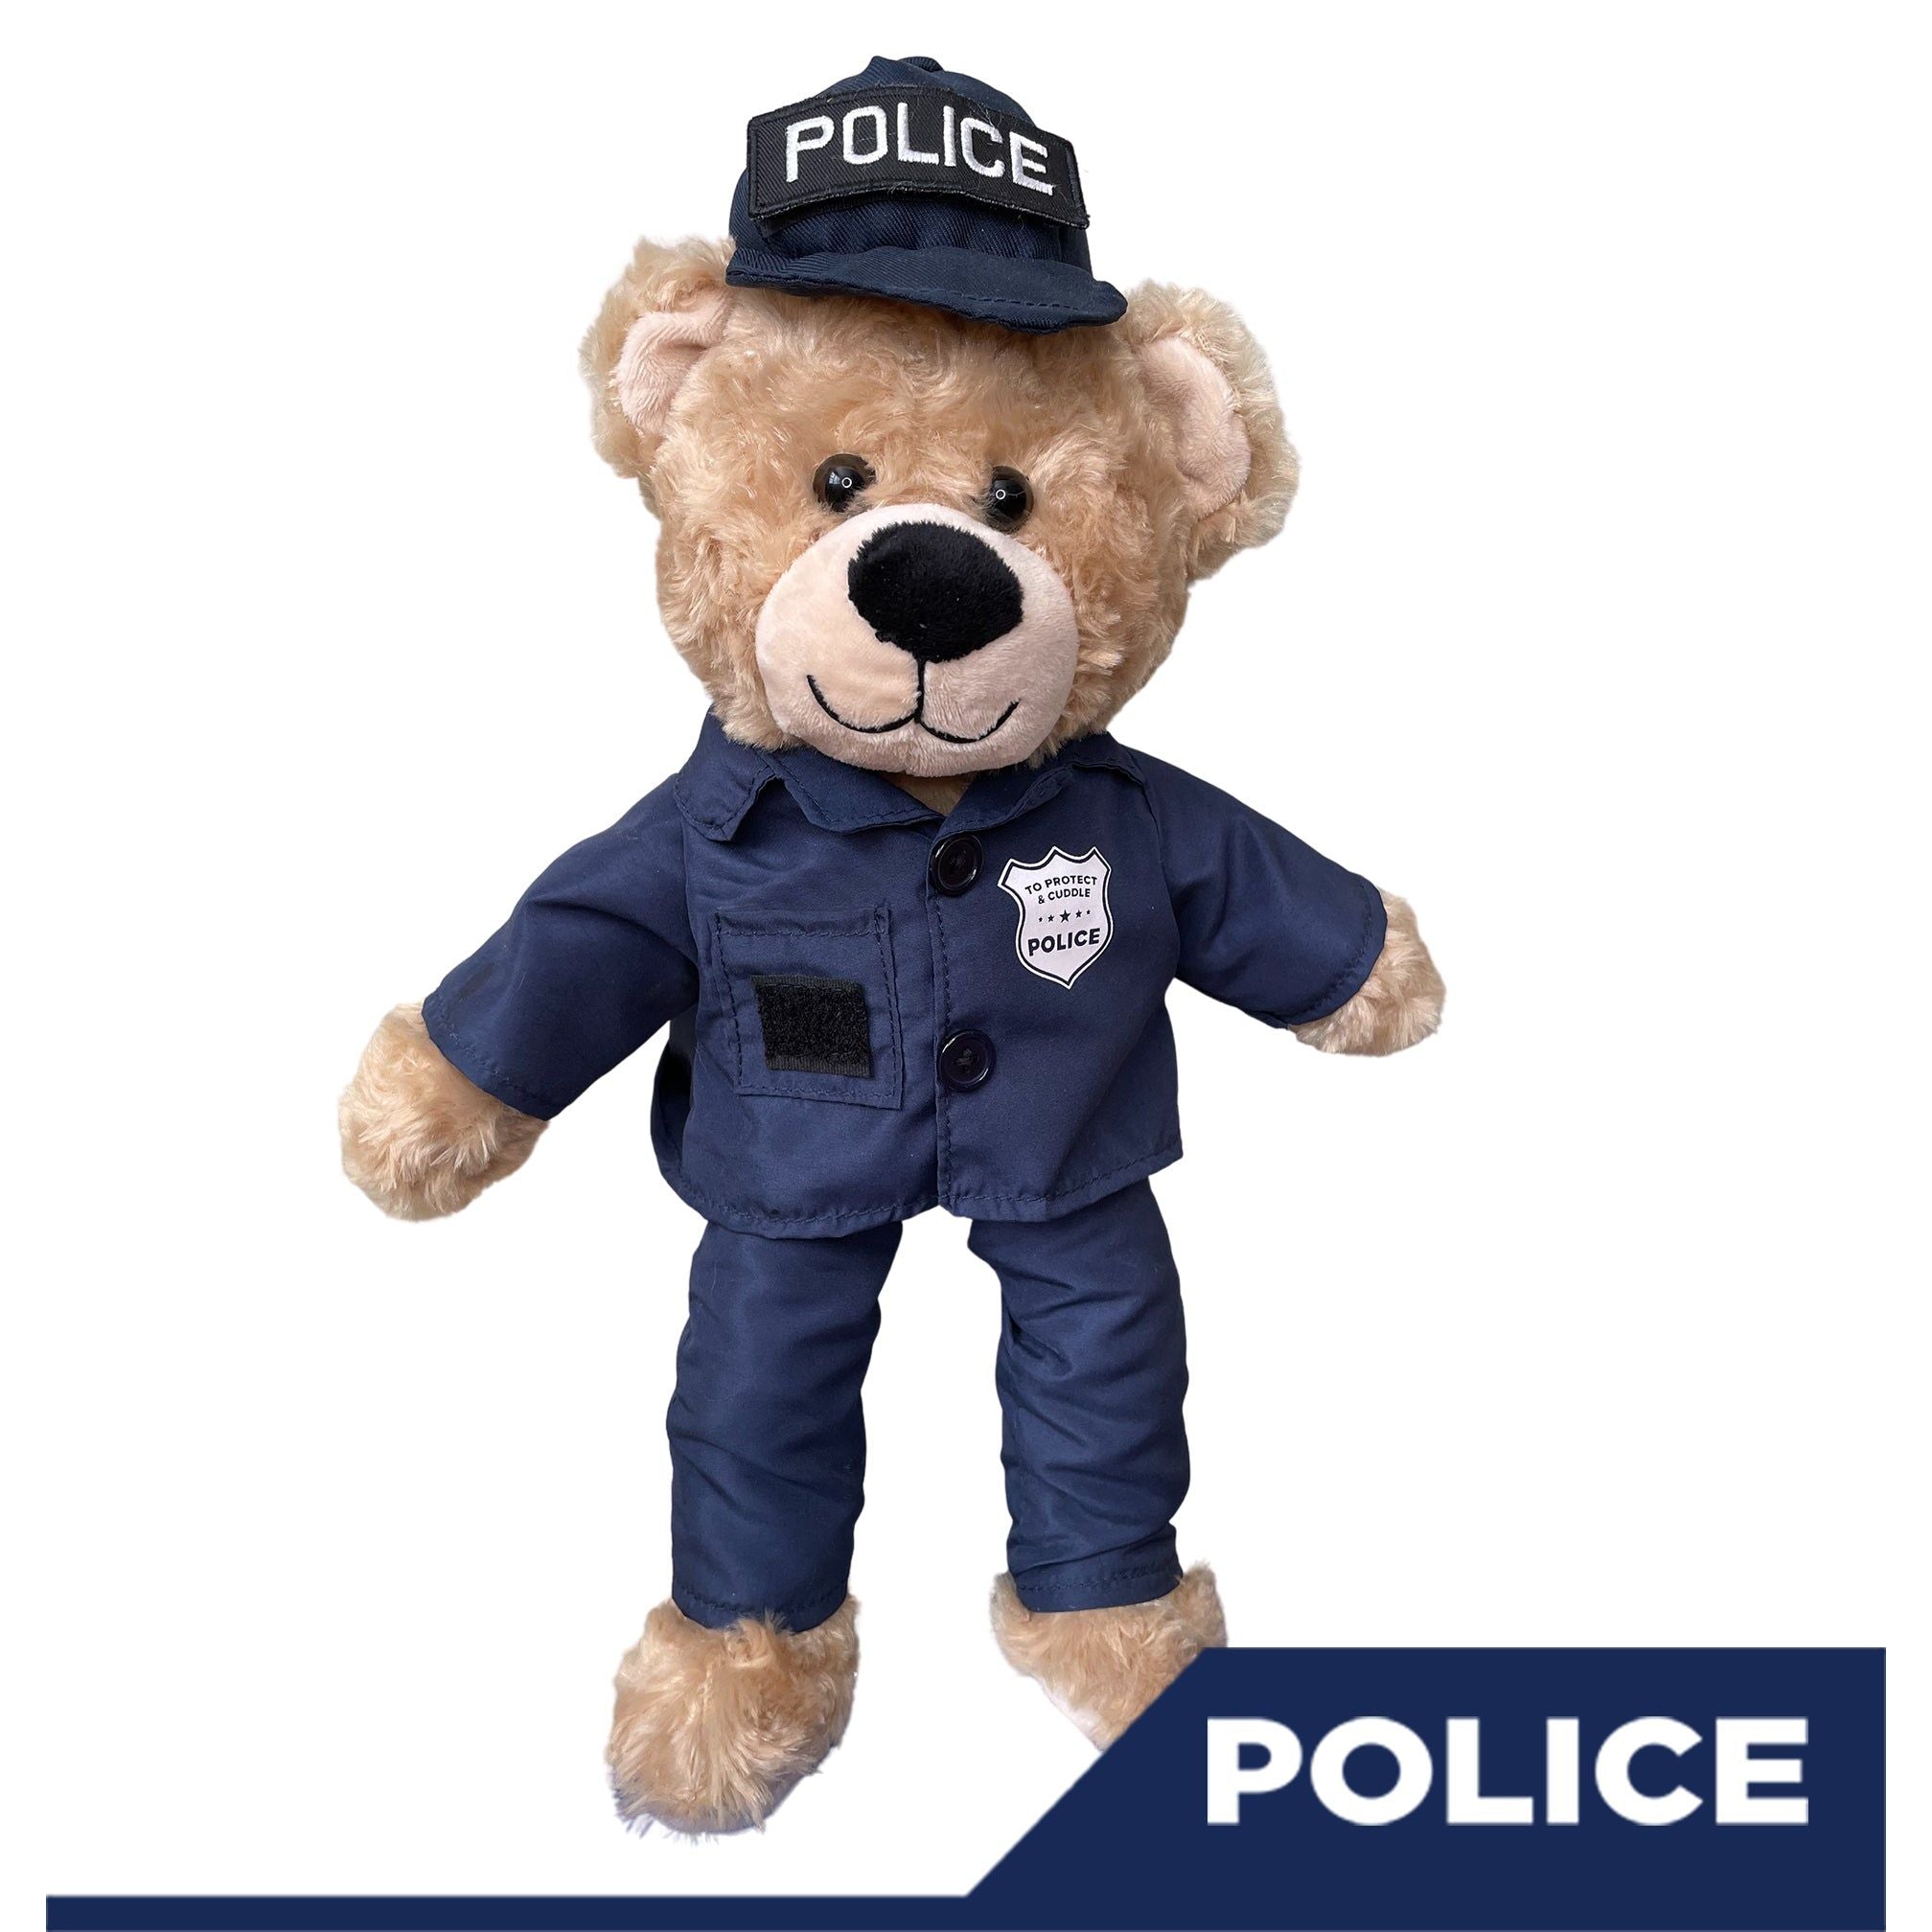 Sgt Sleeptight Police Teddy Bear - ZZZ BEARS